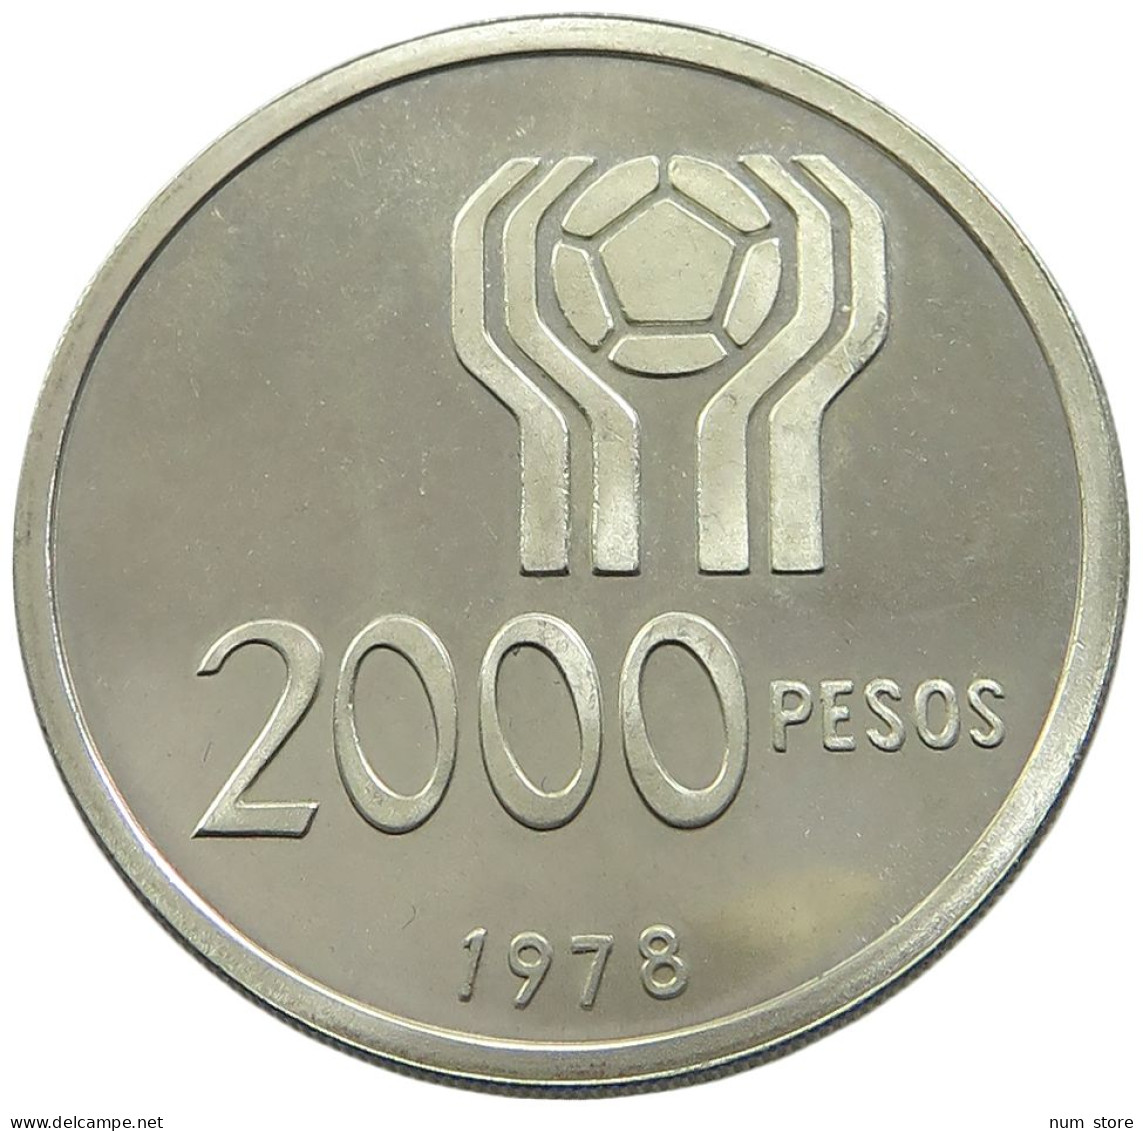 ARGENTINA 2000 PESOS 1978 PROOF #sm14 0953 - Argentine